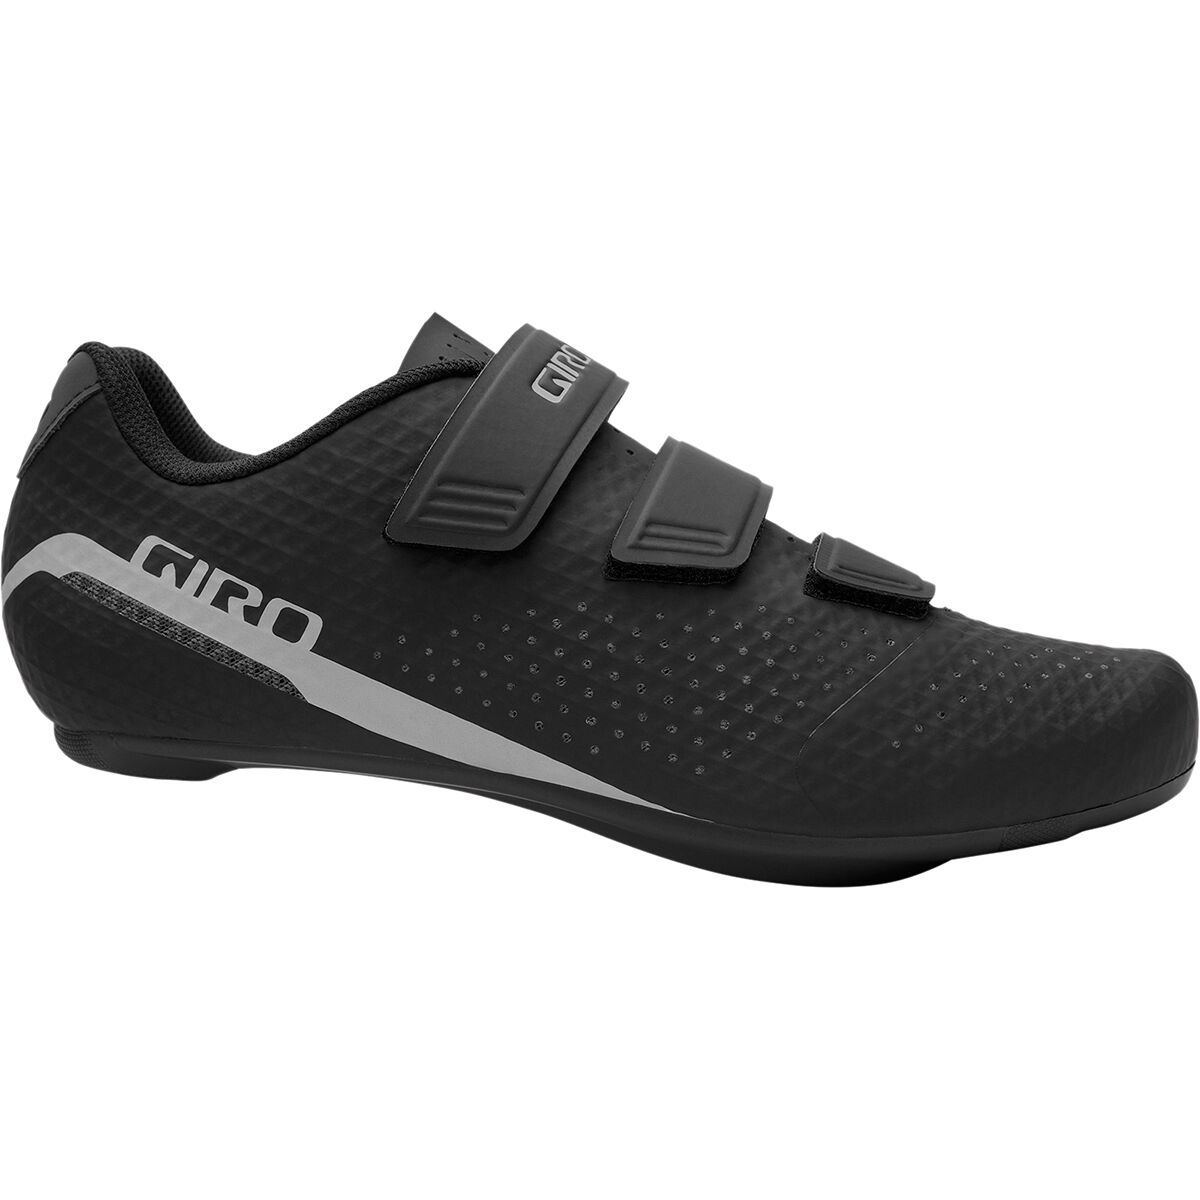 Giro Stylus Cycling Shoe - Men's Black, 49.0